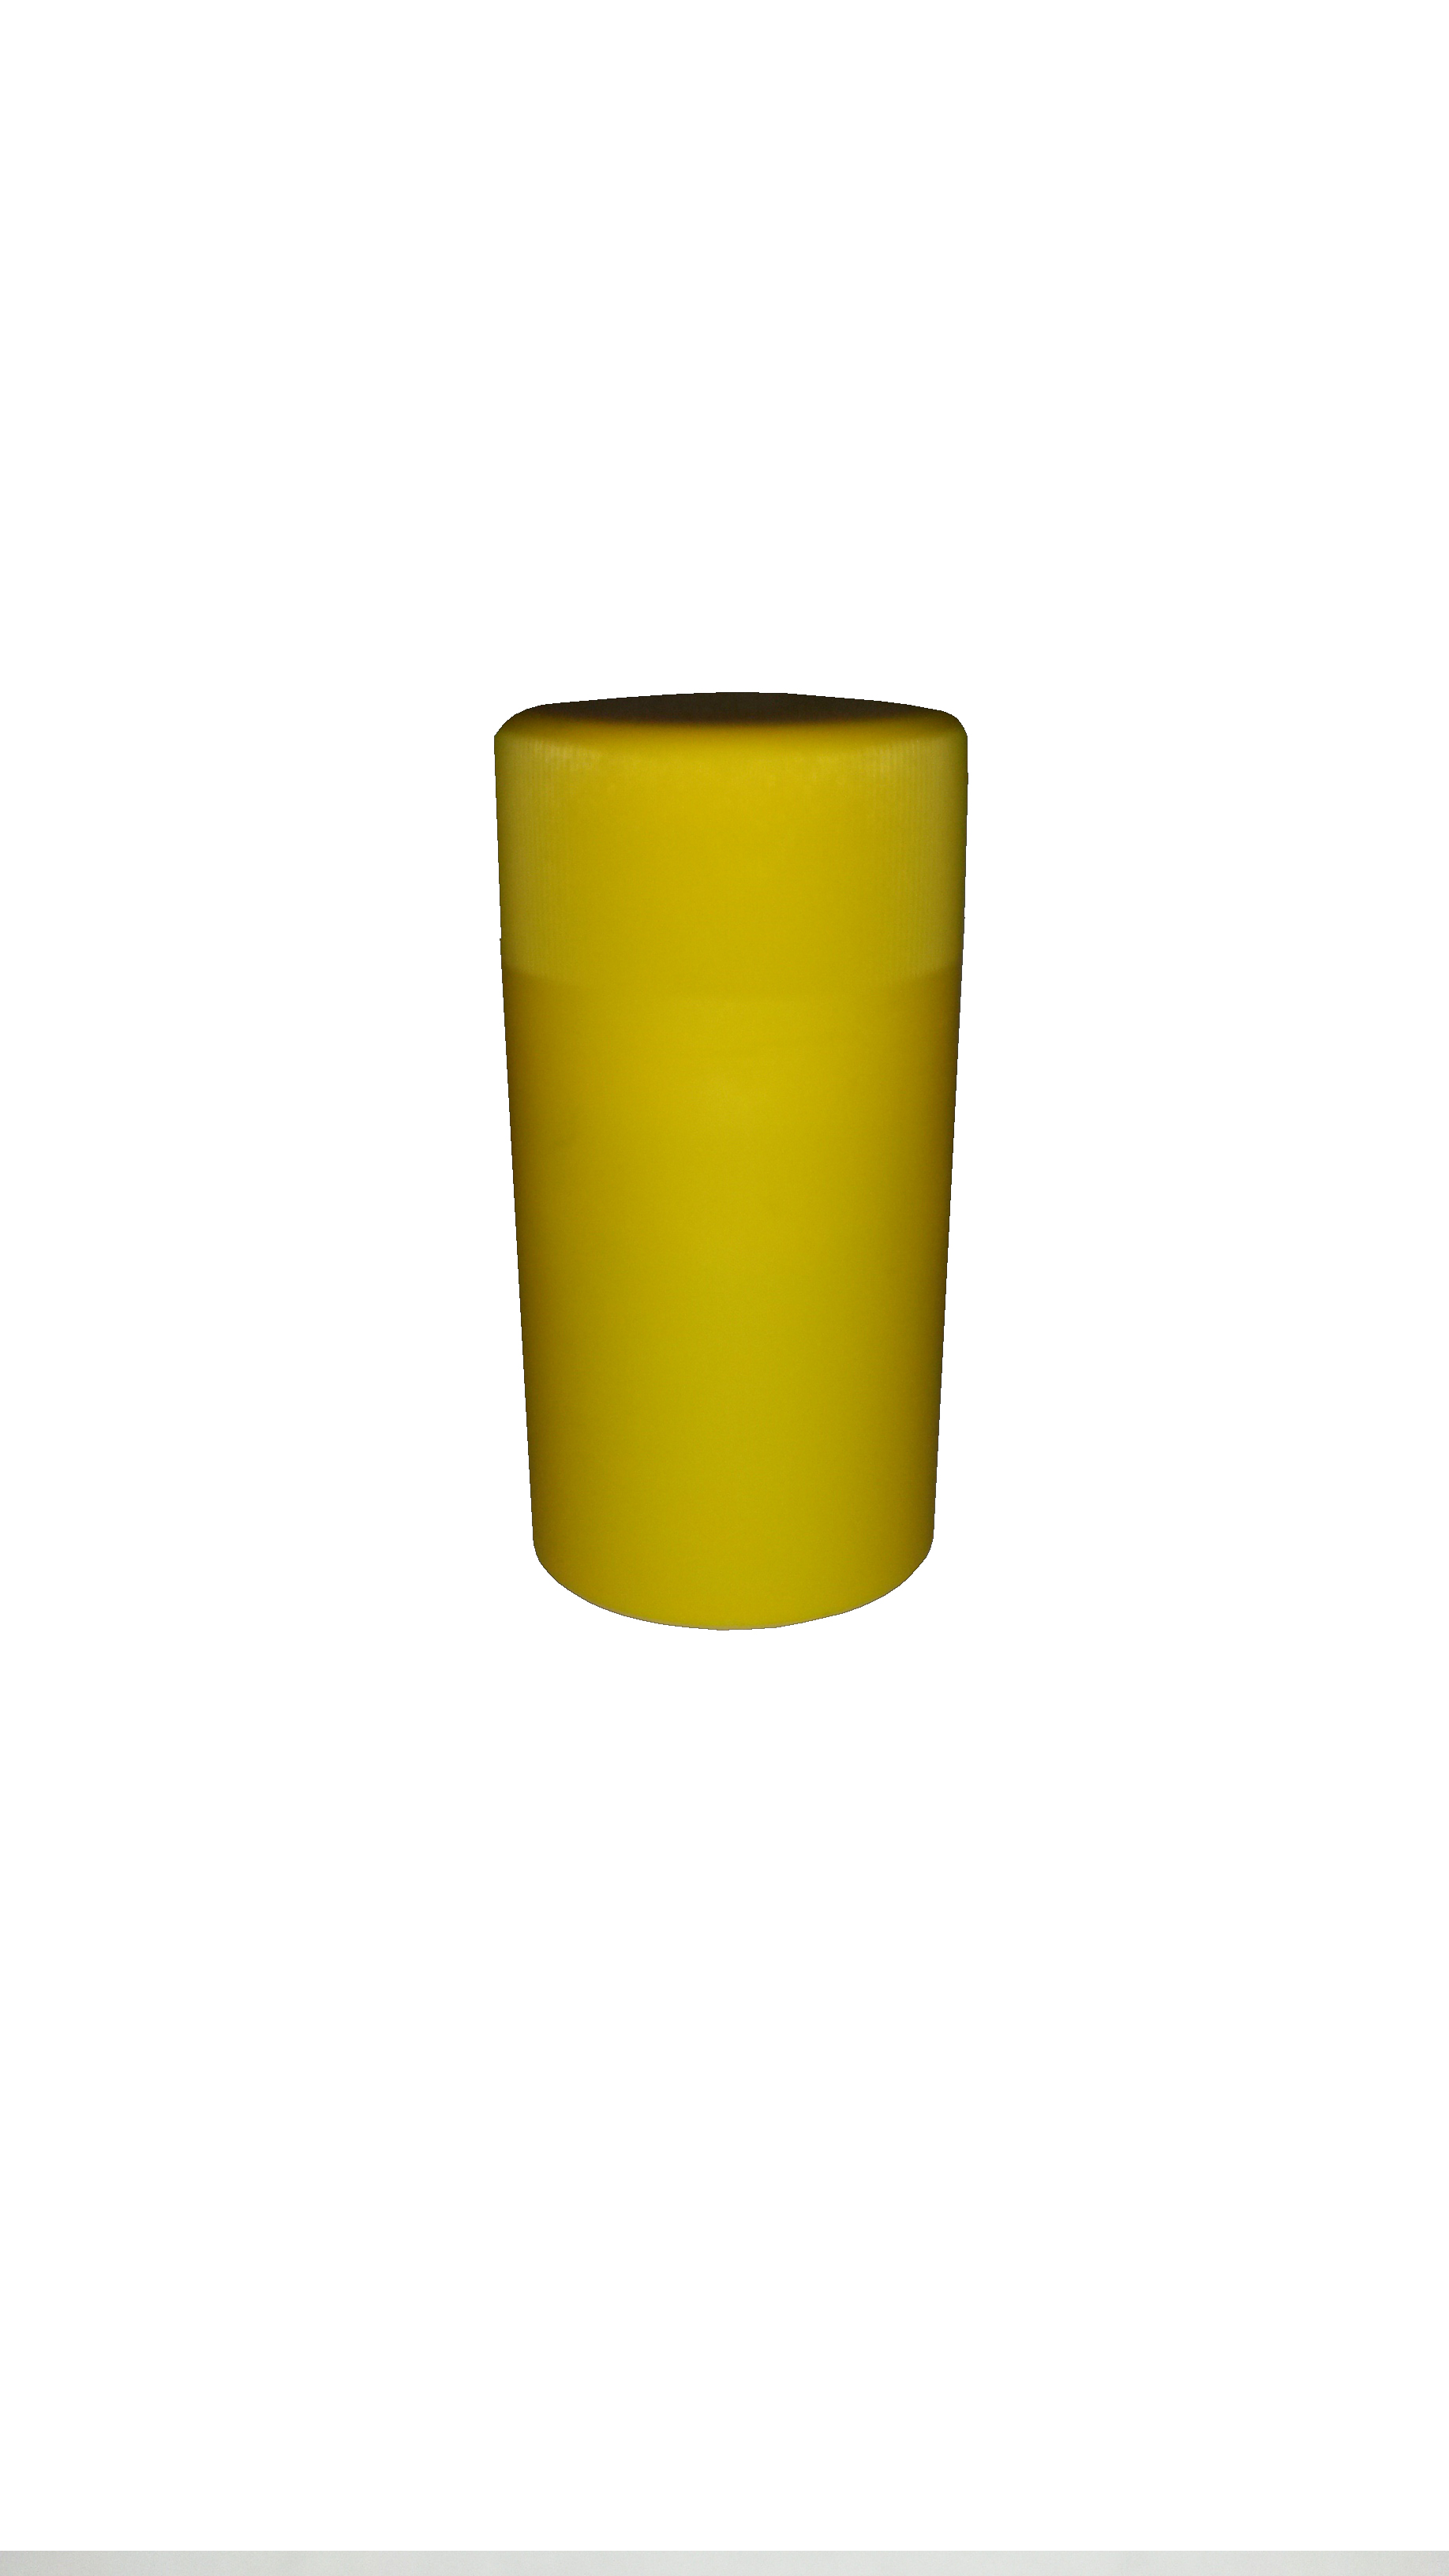 Novatwist Kunststoff BVS-Verschluss 30/60 gelb, matt mit innenliegendem Gewinde